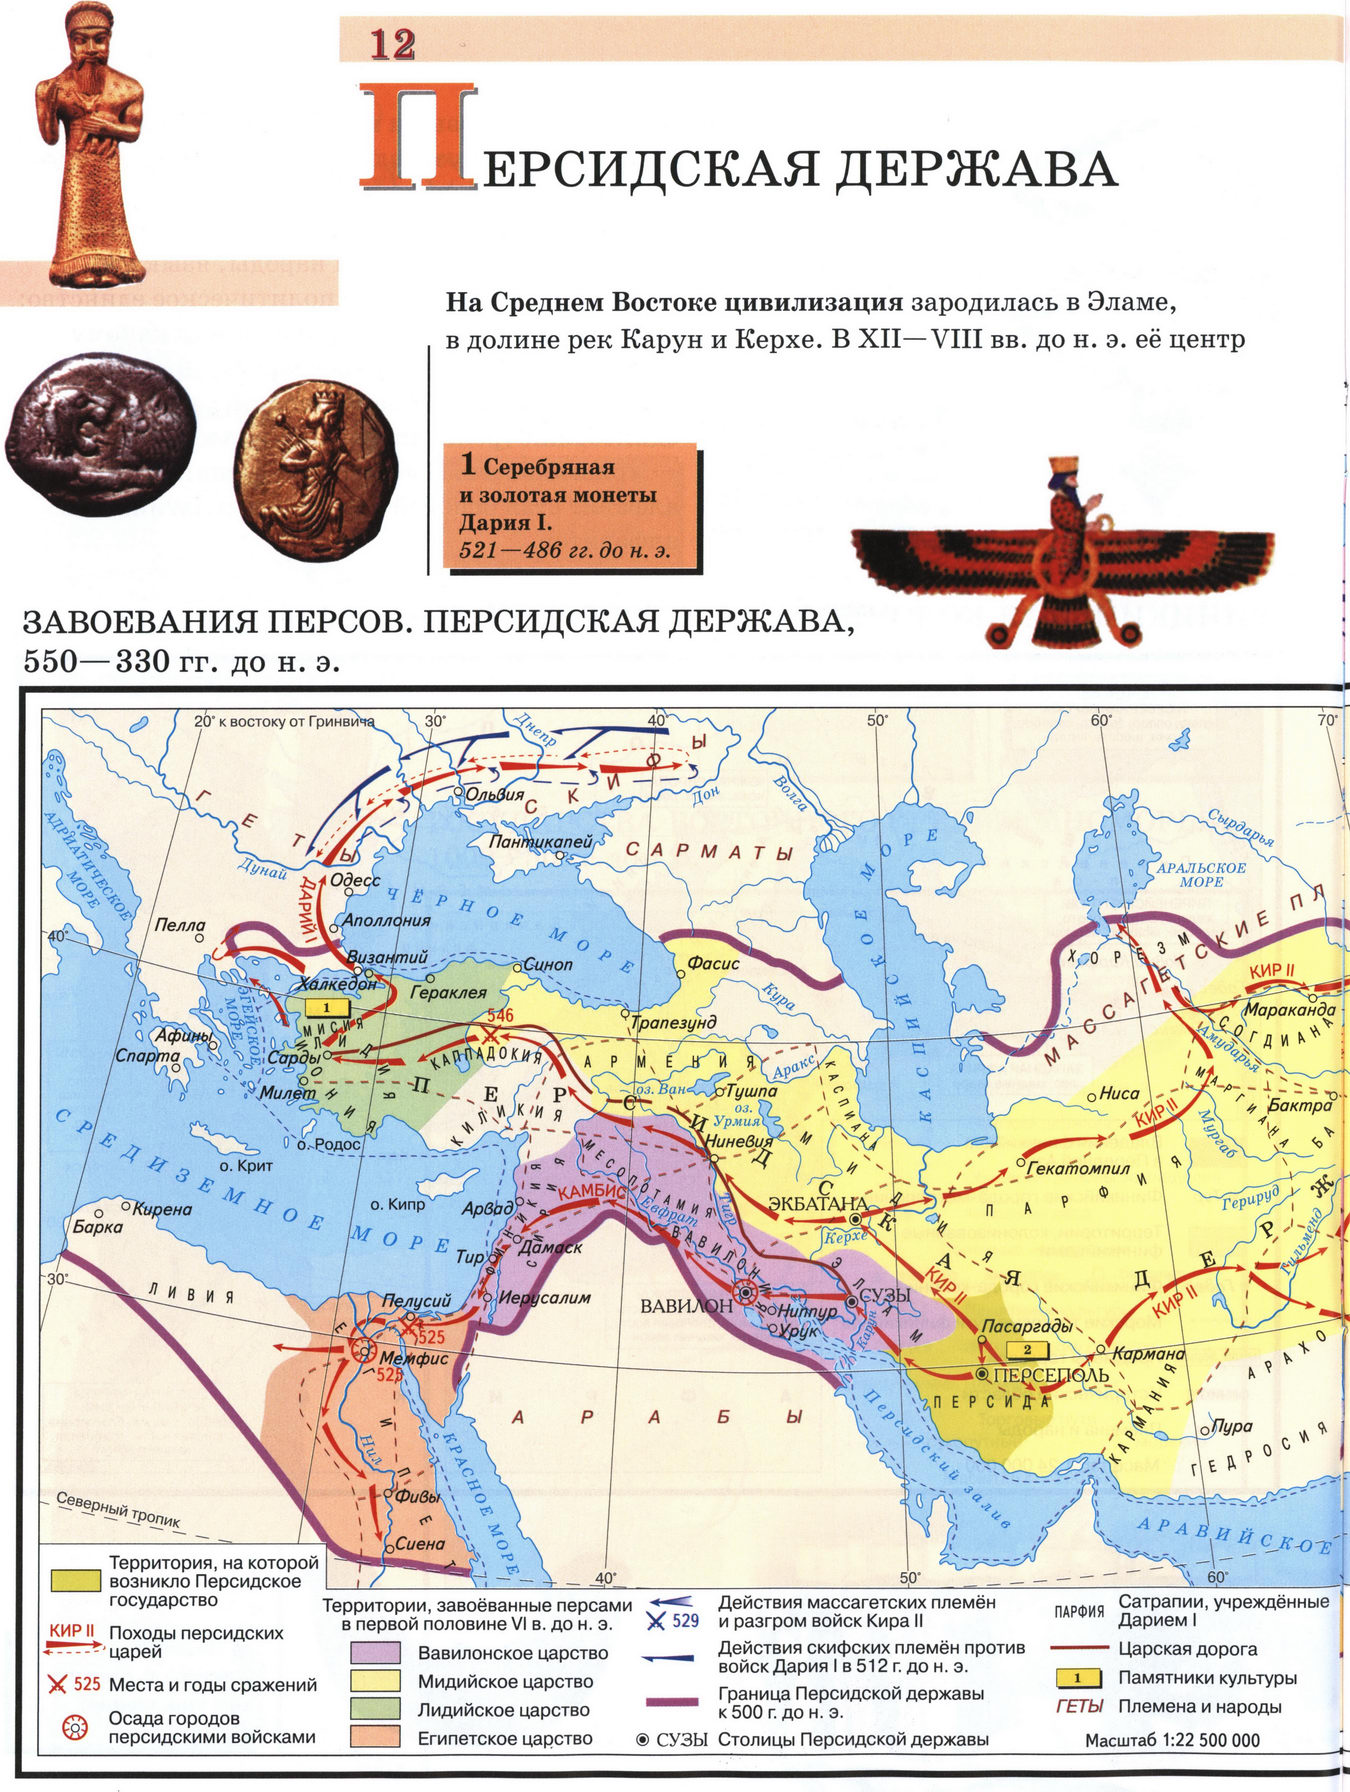 Персидская держава - карта 